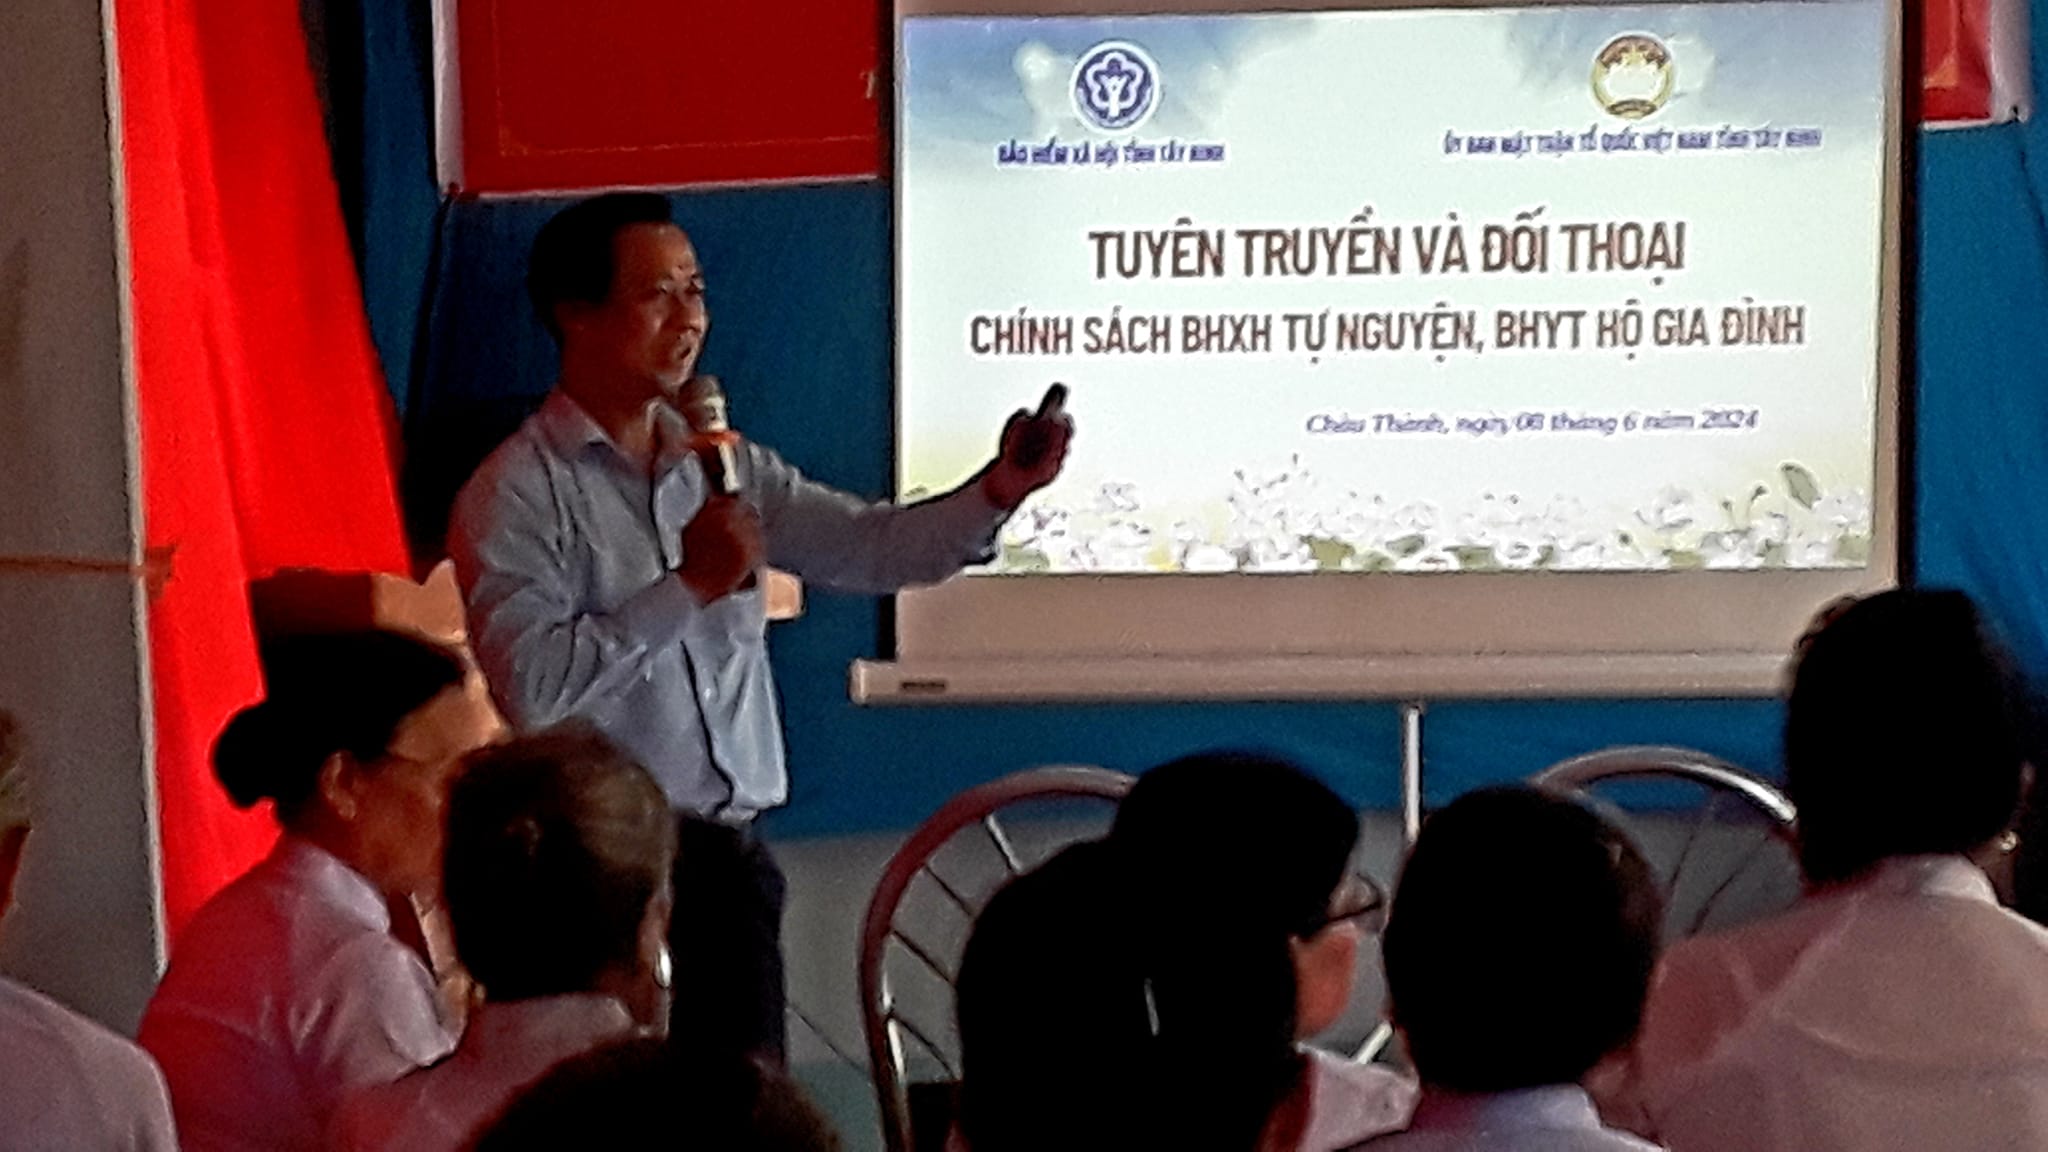 Ủy ban MTTQ Việt Nam huyện Châu Thành: Phối hợp tổ chức tuyên truyền và đối thoại chính sách Bảo hiểm xã hội tự nguyện, Bảo hiểm y tế hộ gia đình trong tôn giáo Cao Đài